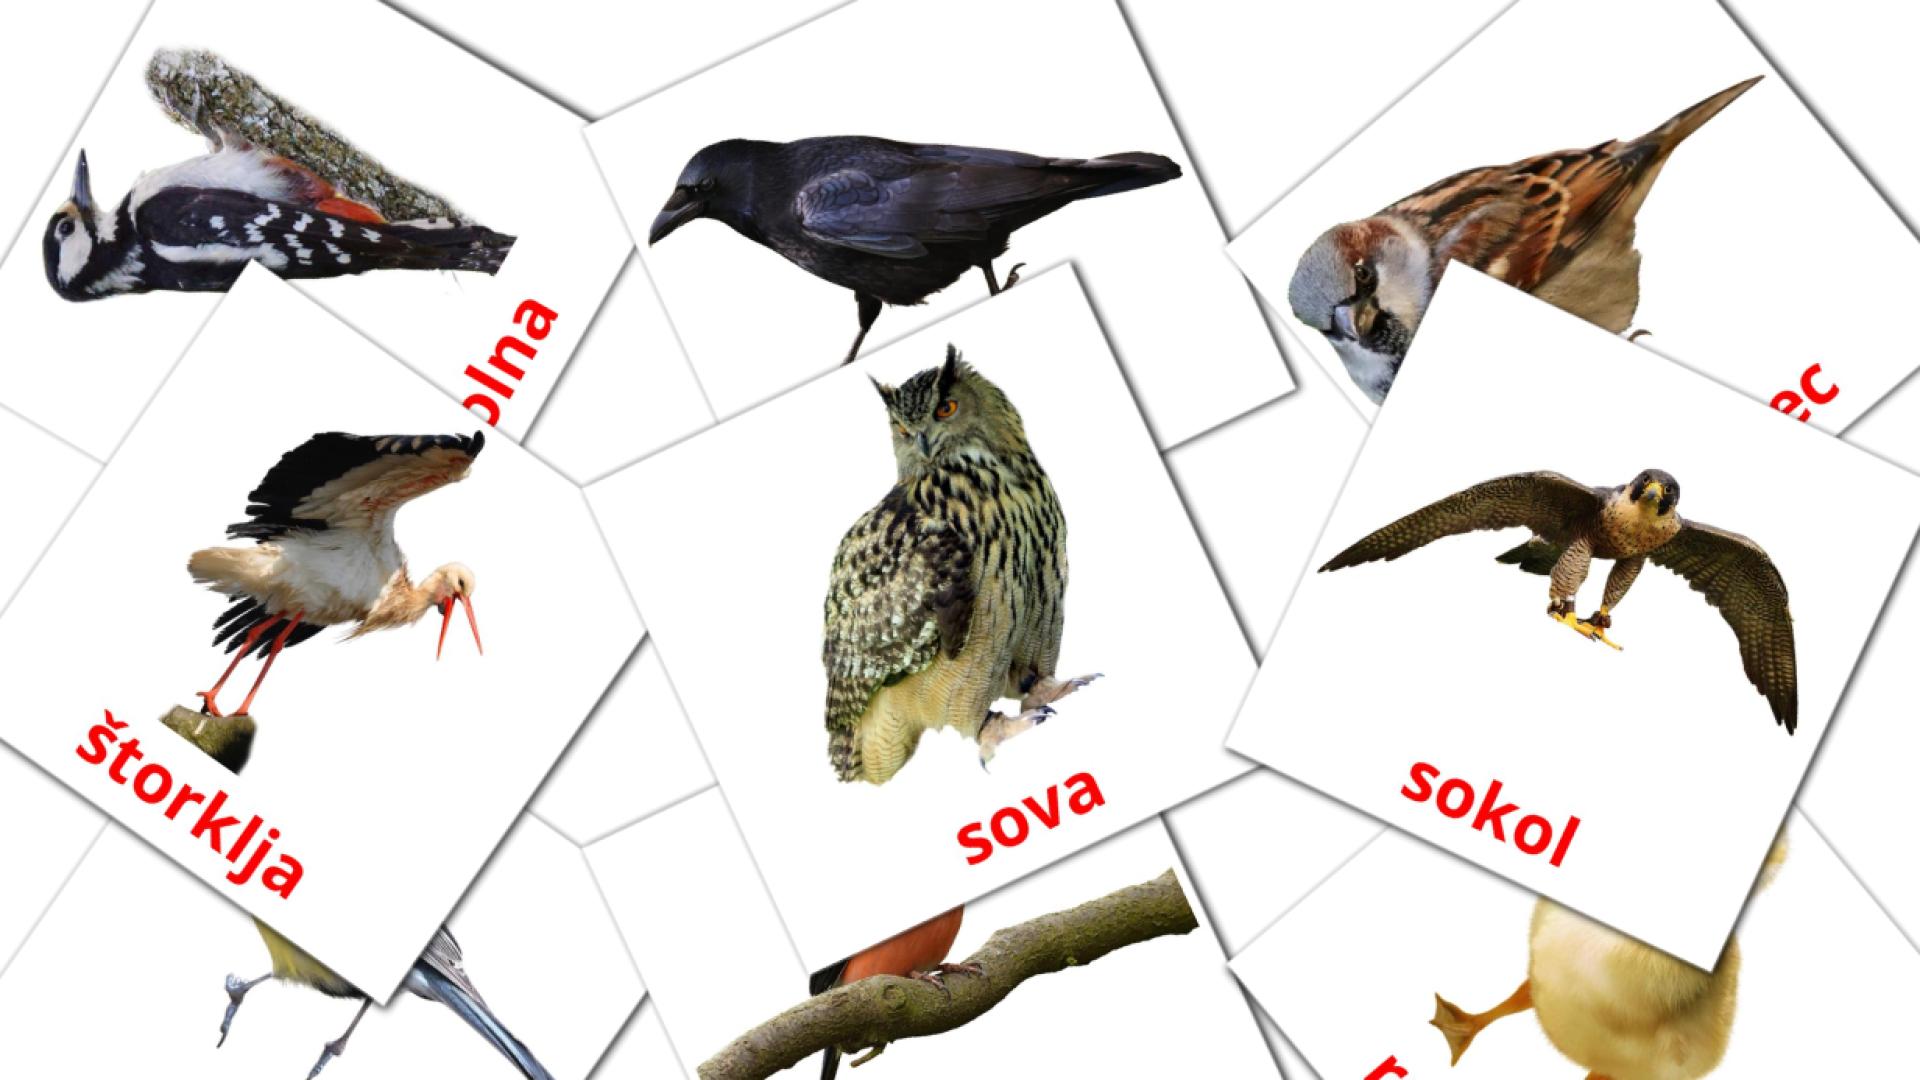 Ptice sloveens woordenschat flashcards